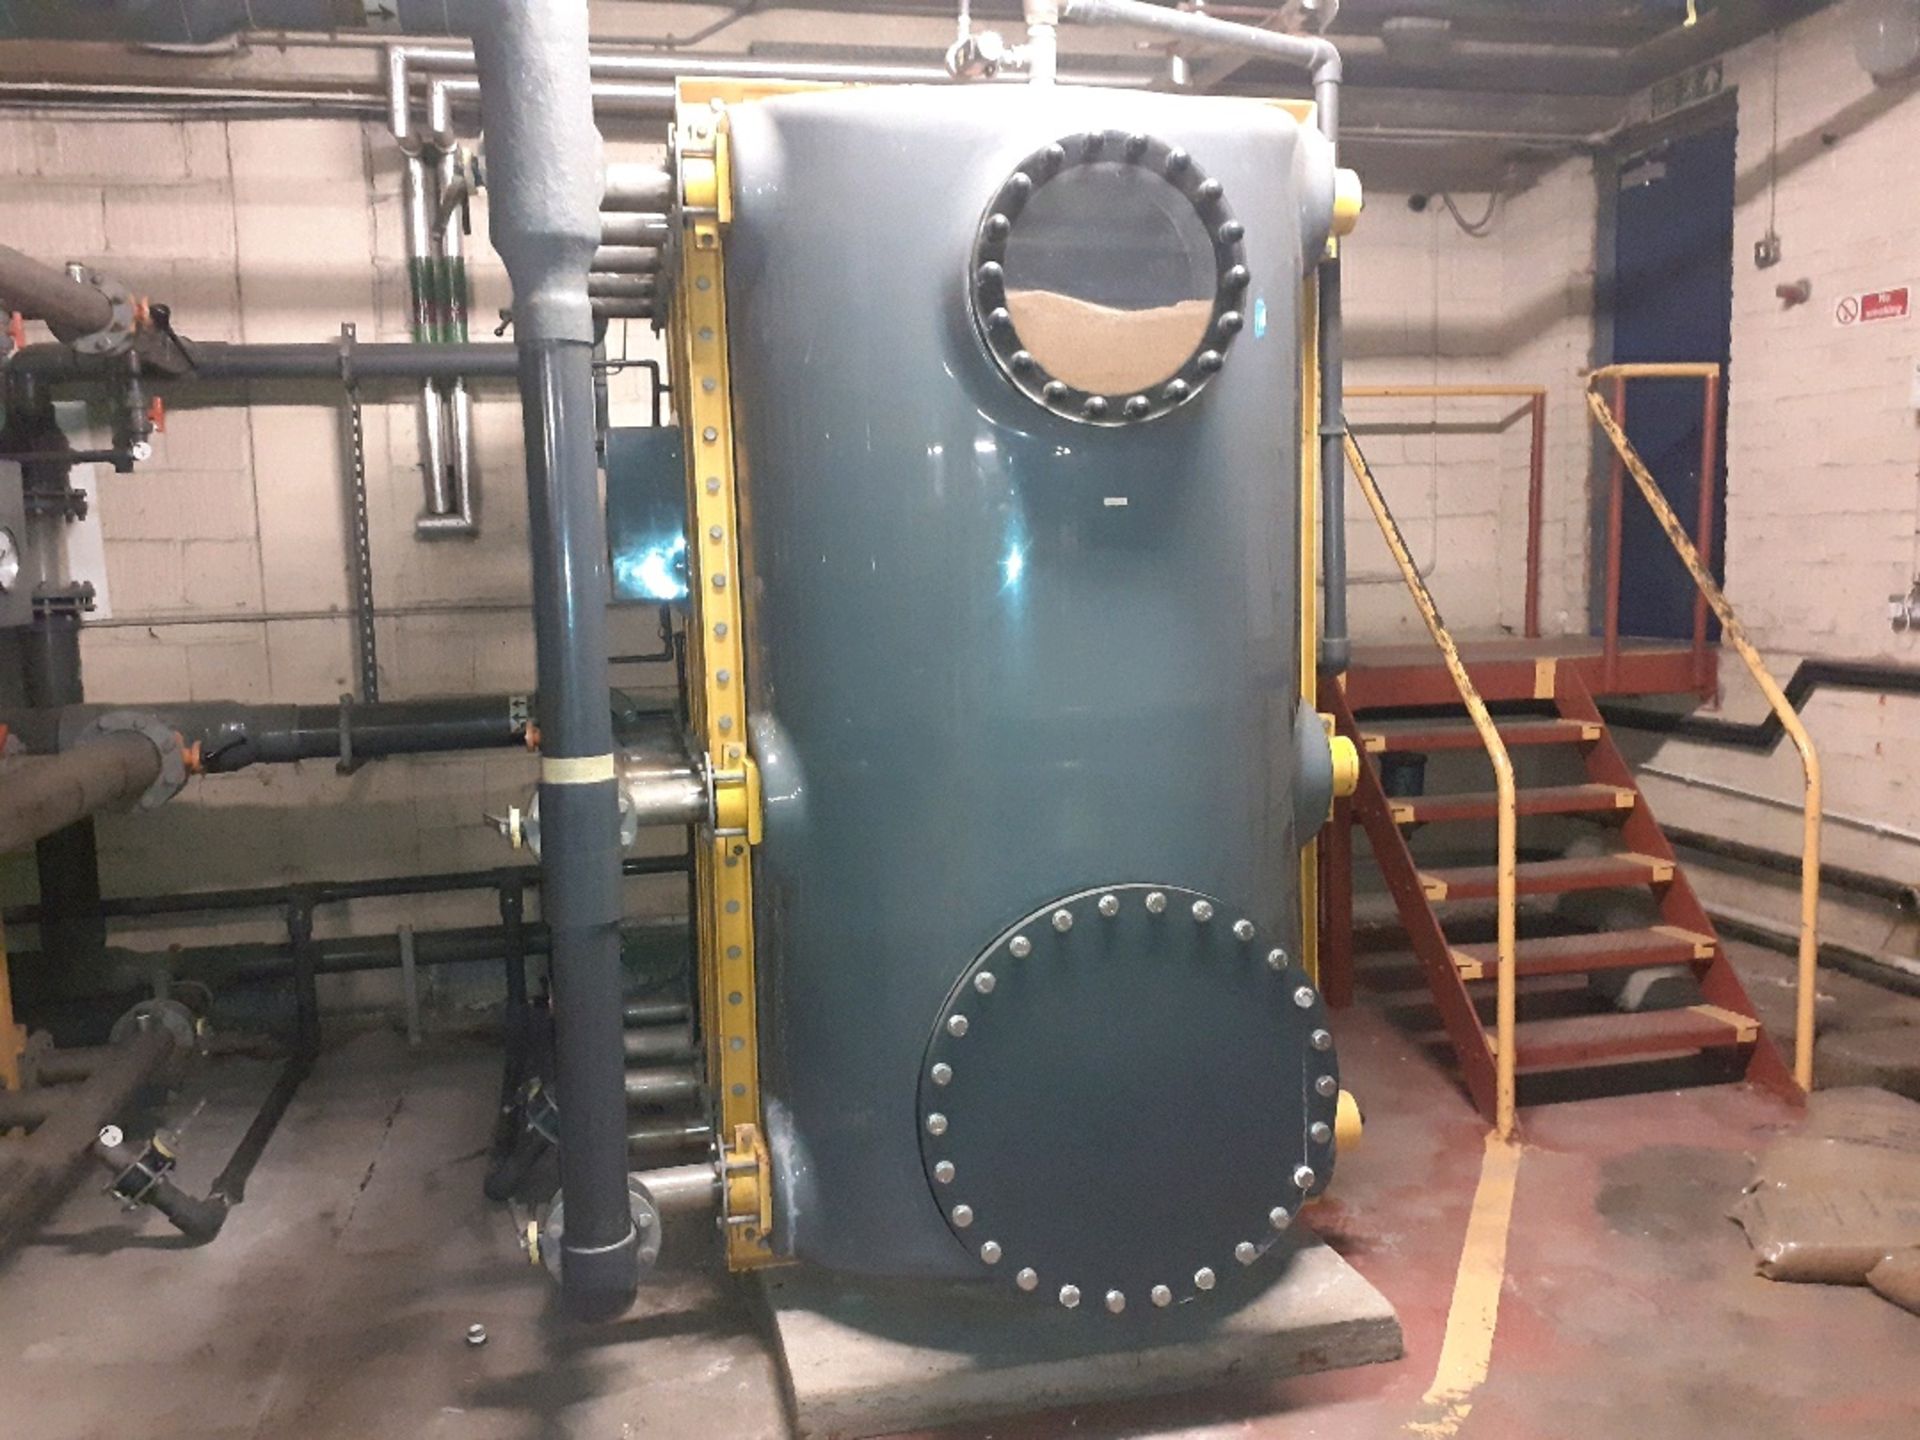 Filtration unit